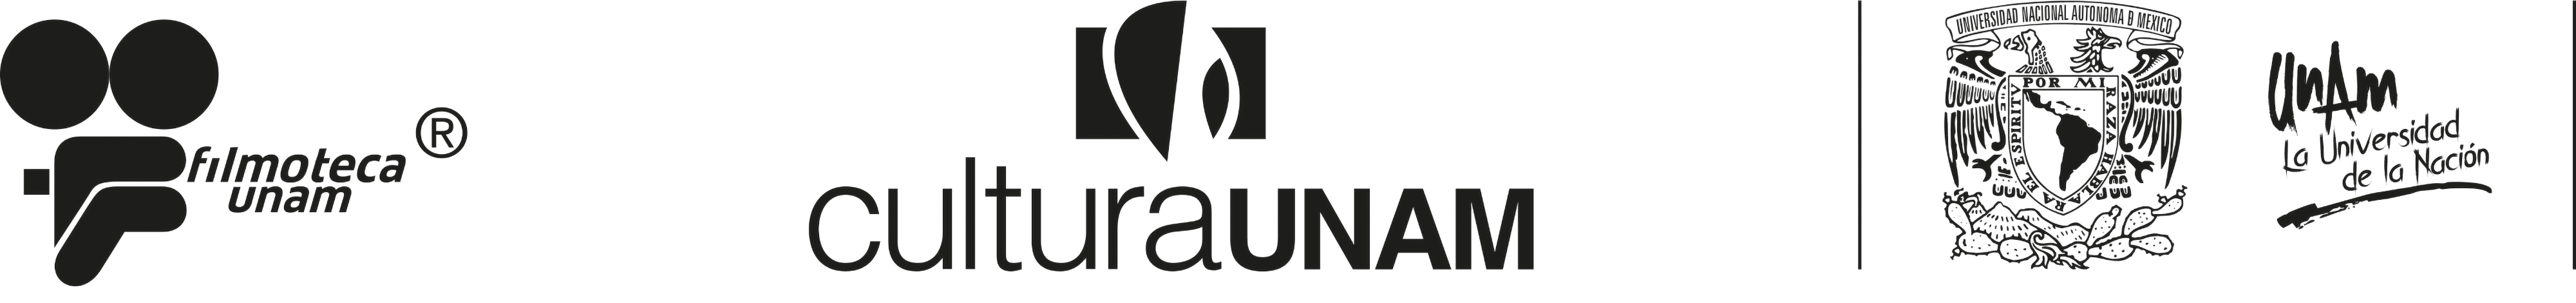 Logo Filmoteca Unam